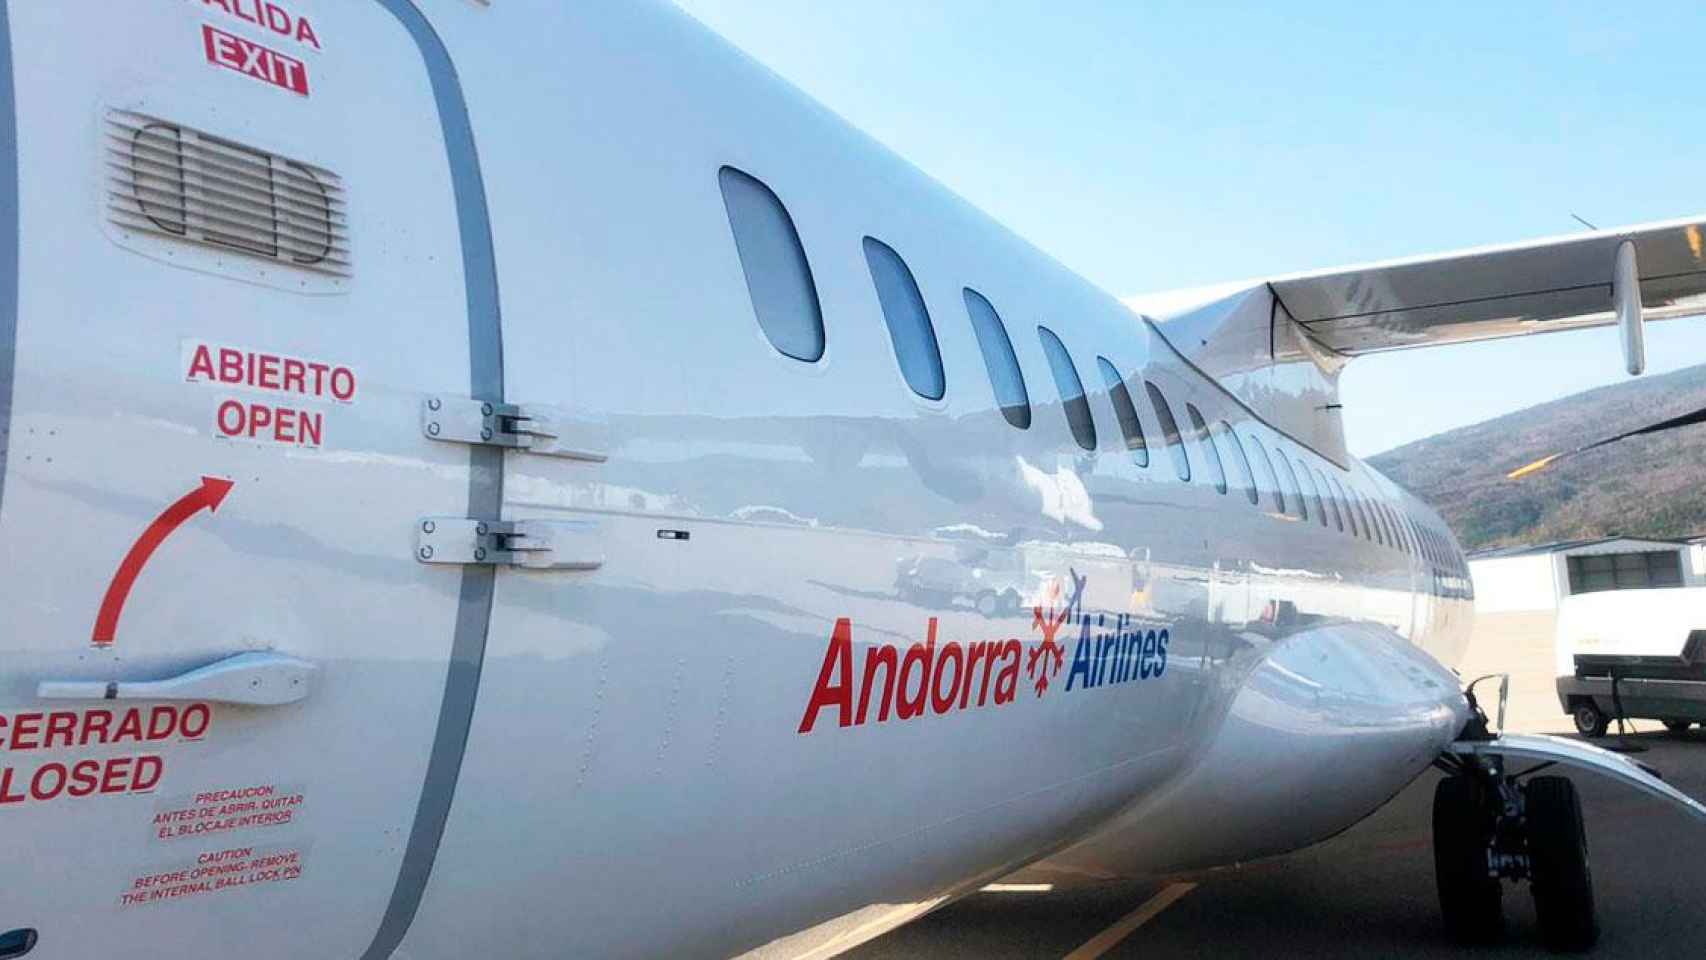 Imagen de una aeronave de Andorra Airlines en el aeropuerto de Andorra-La Seu / CG